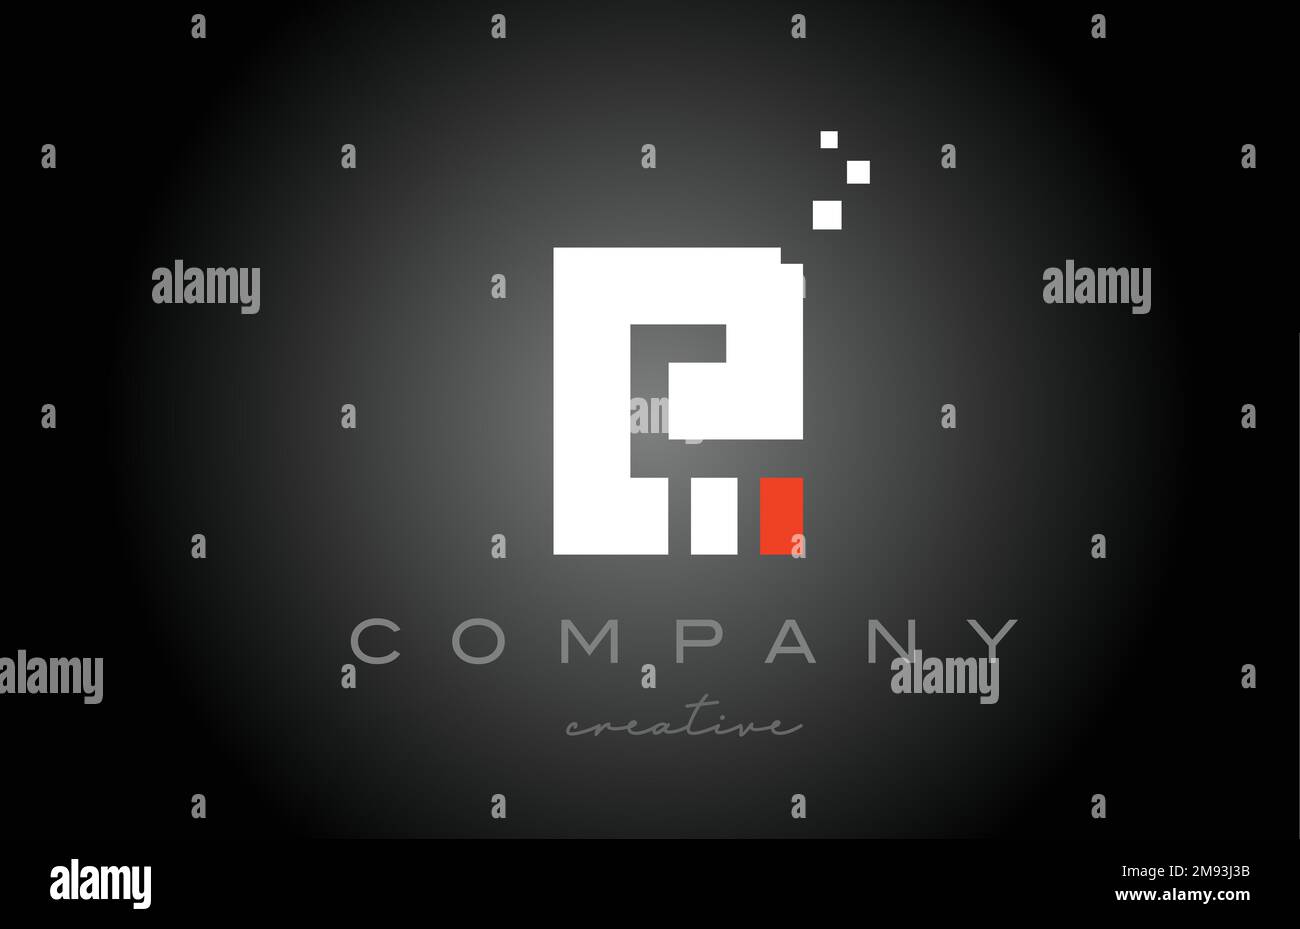 E disegno dell'icona del logo lettera alfabetica a punti. Modello di progettazione per aziende o aziende in bianco e nero e rosso Illustrazione Vettoriale